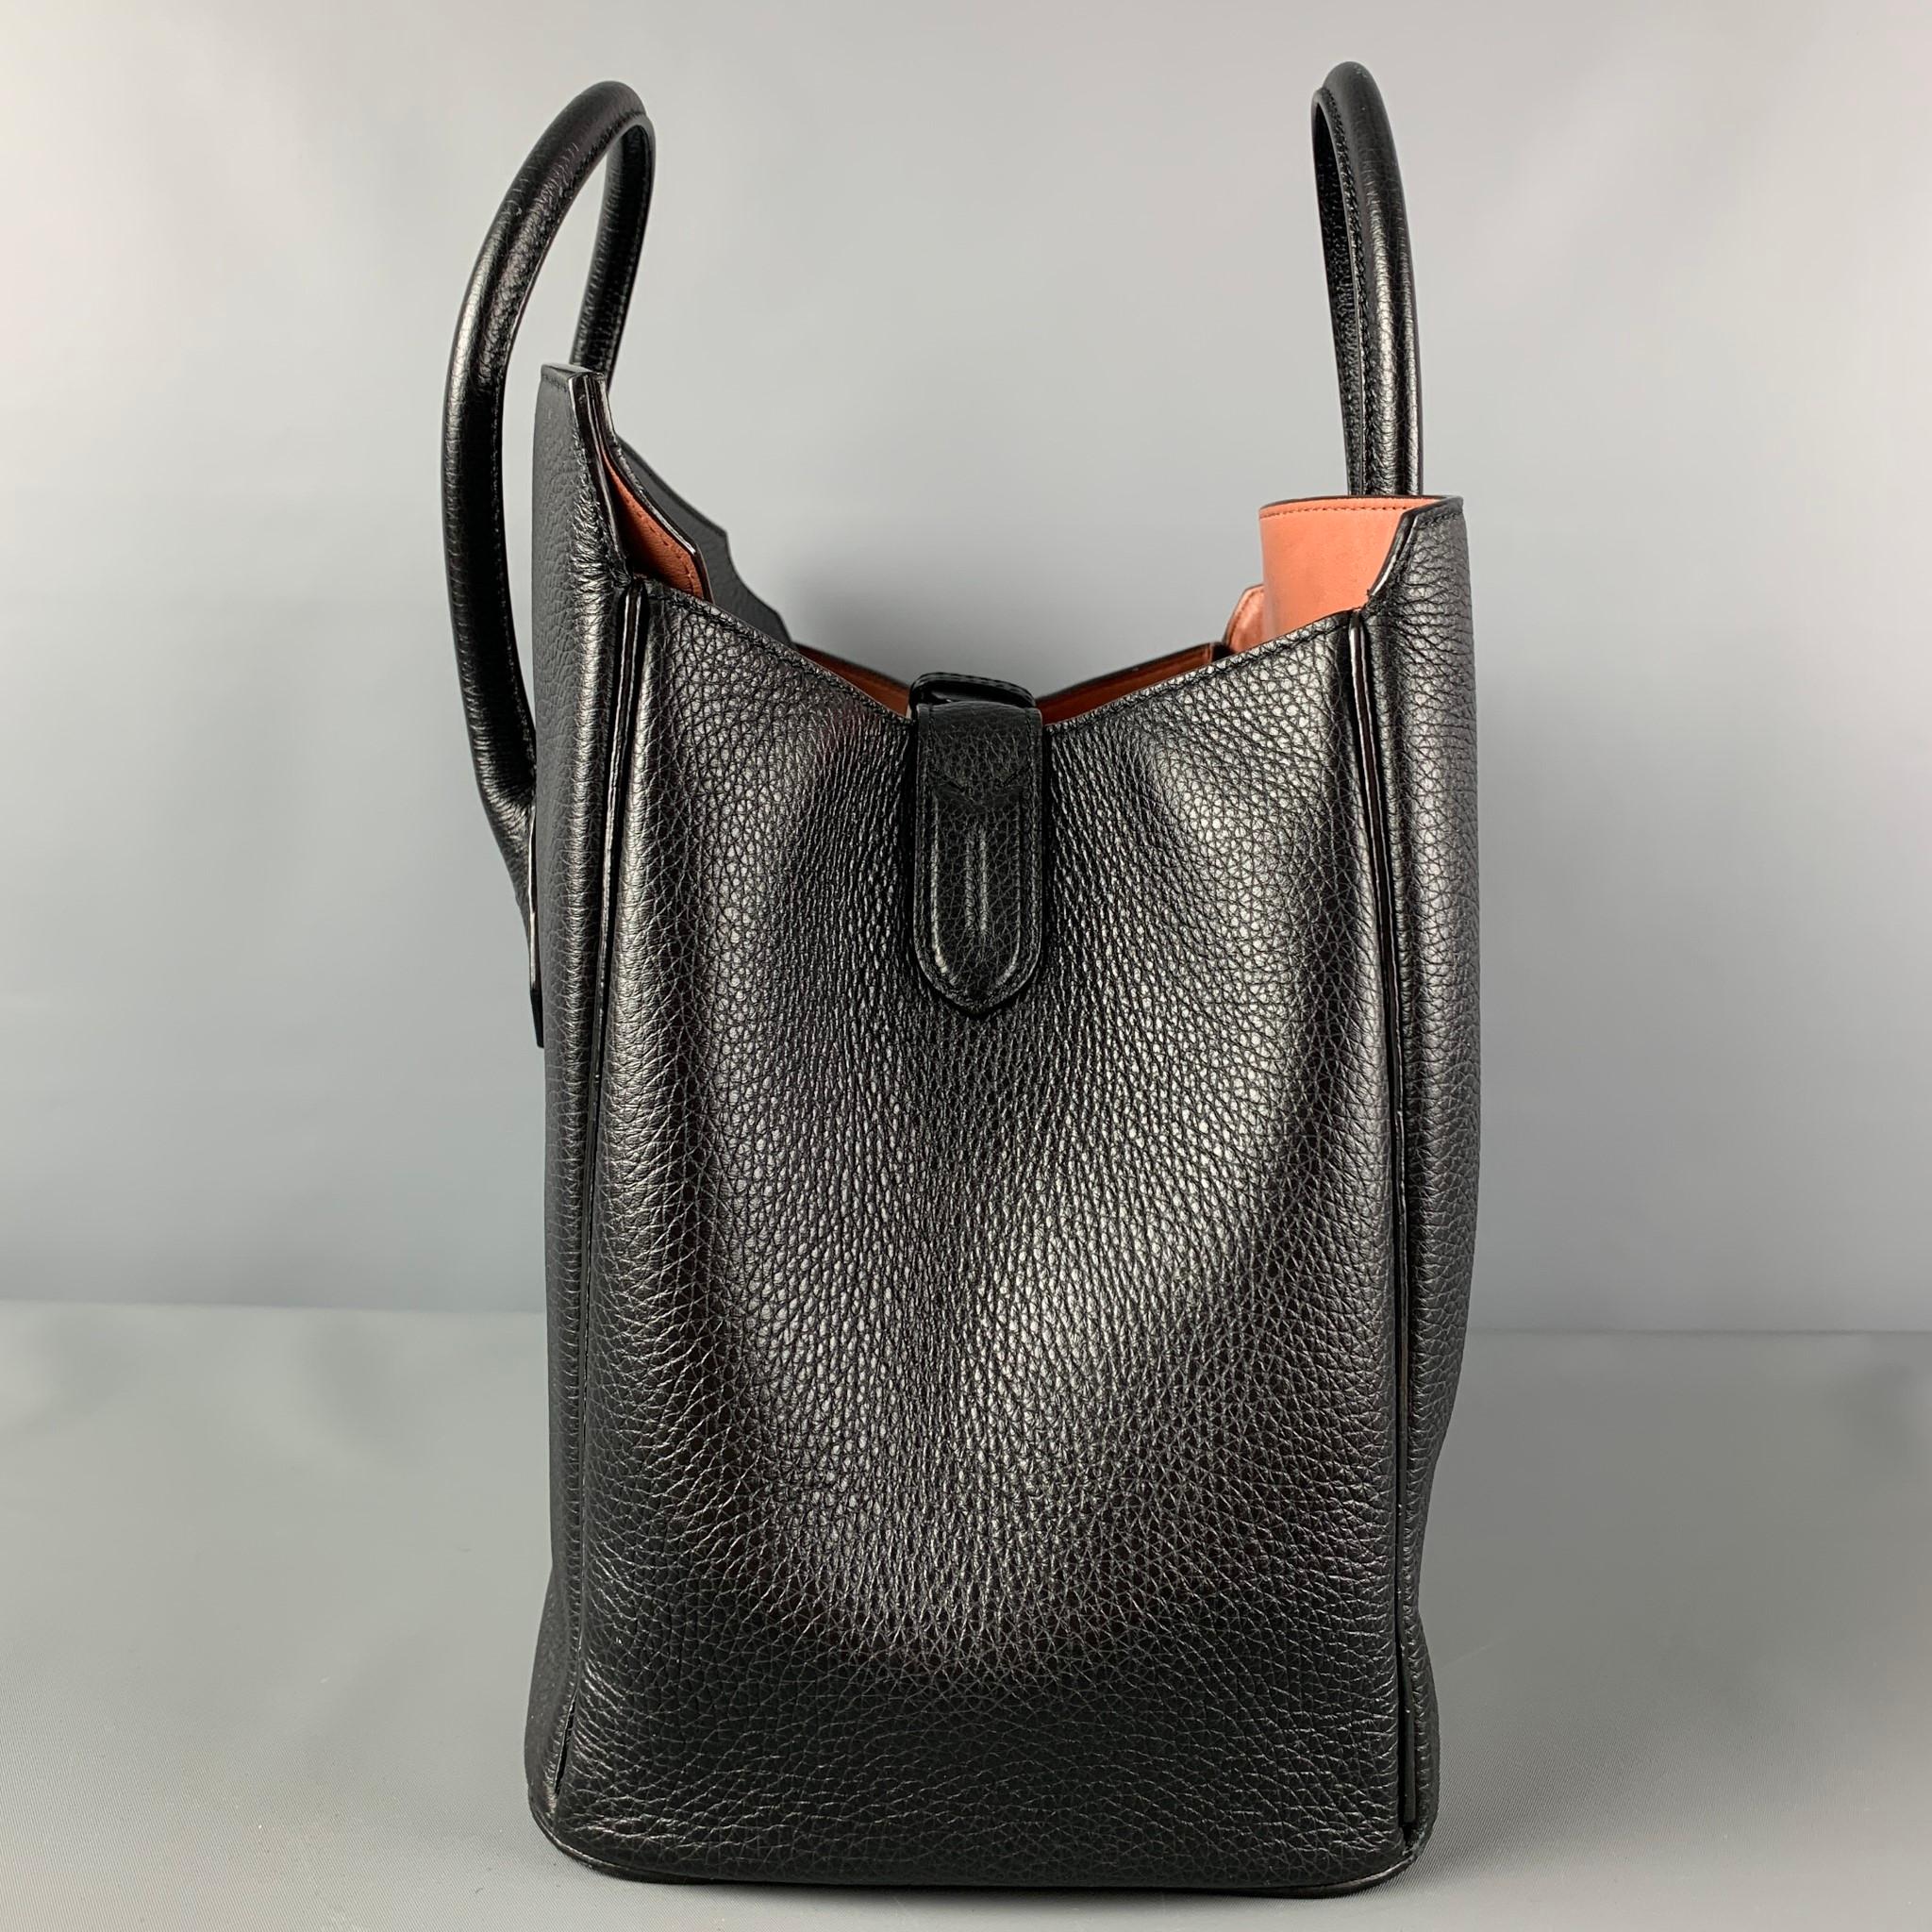 BALLY Black Pebble Grain Leather Top Handles Handbag In Good Condition In San Francisco, CA